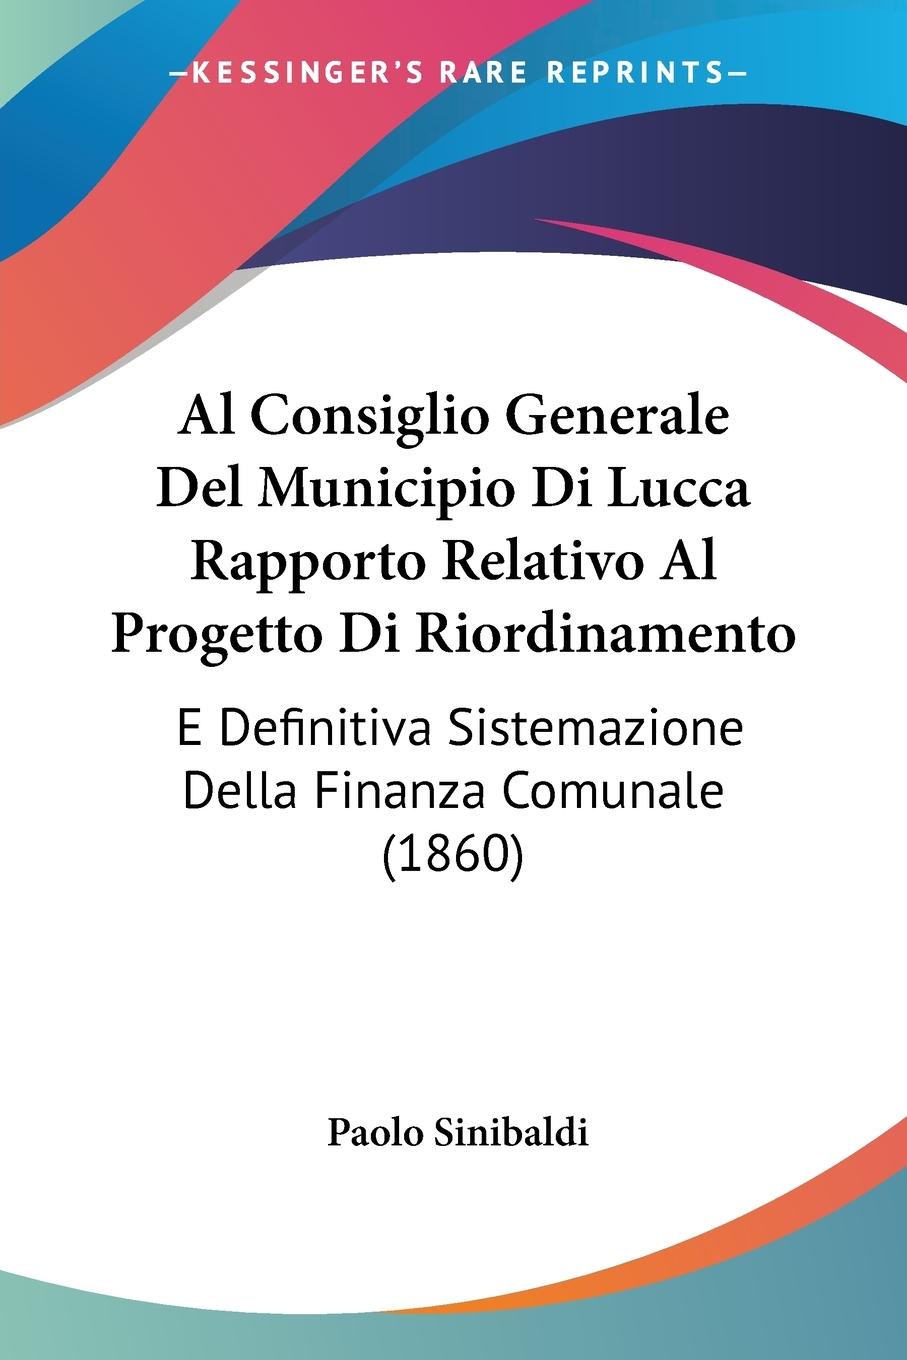 Al Consiglio Generale Del Municipio Di Lucca Rapporto Relativo Al Progetto Di Riordinamento - Sinibaldi, Paolo